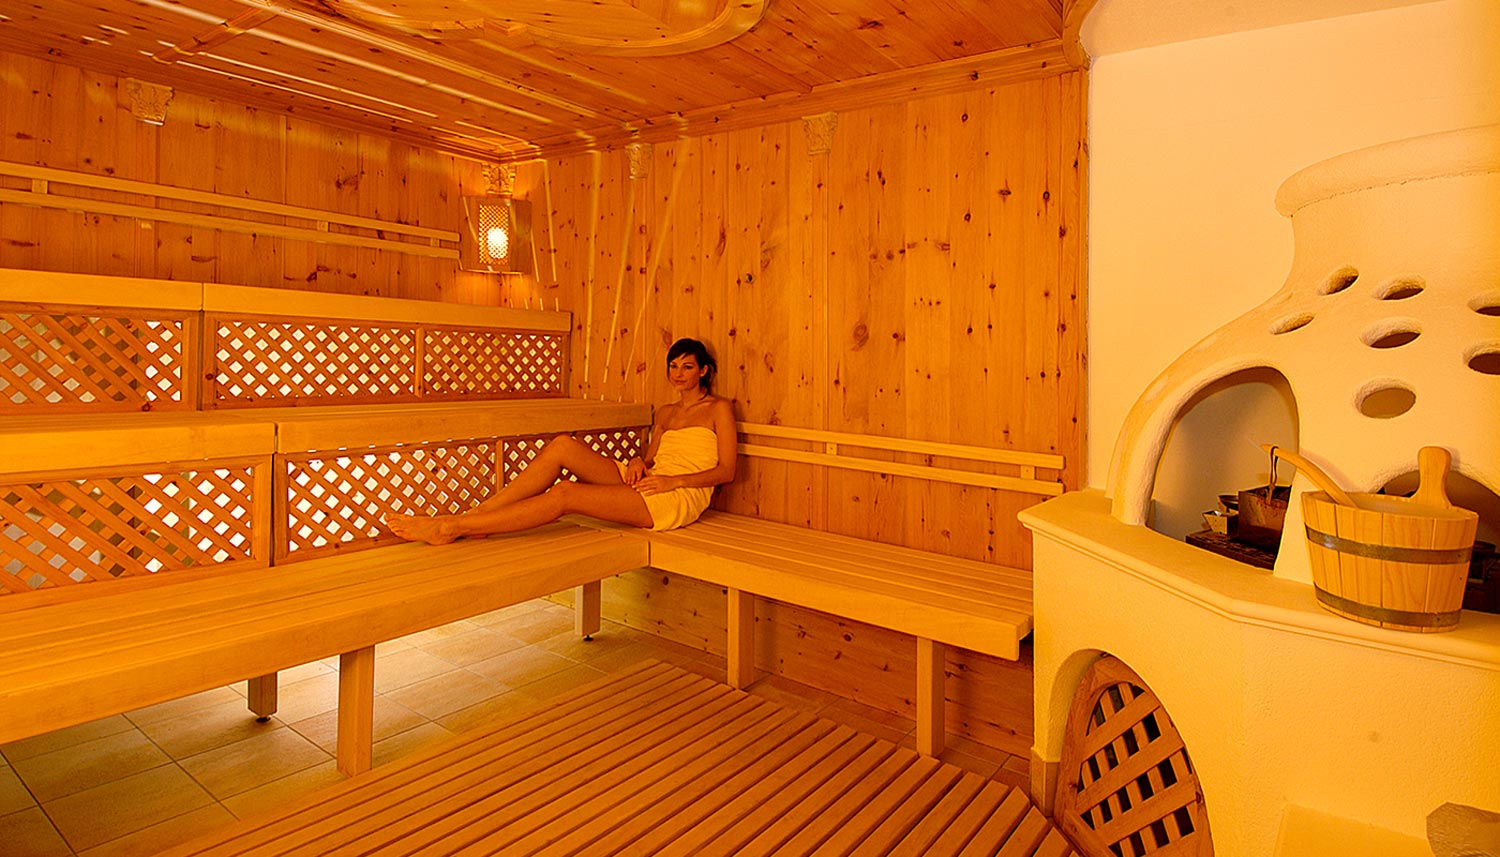 eine Hotelgästin in der finnischen Sauna des Hotel Tannenhof